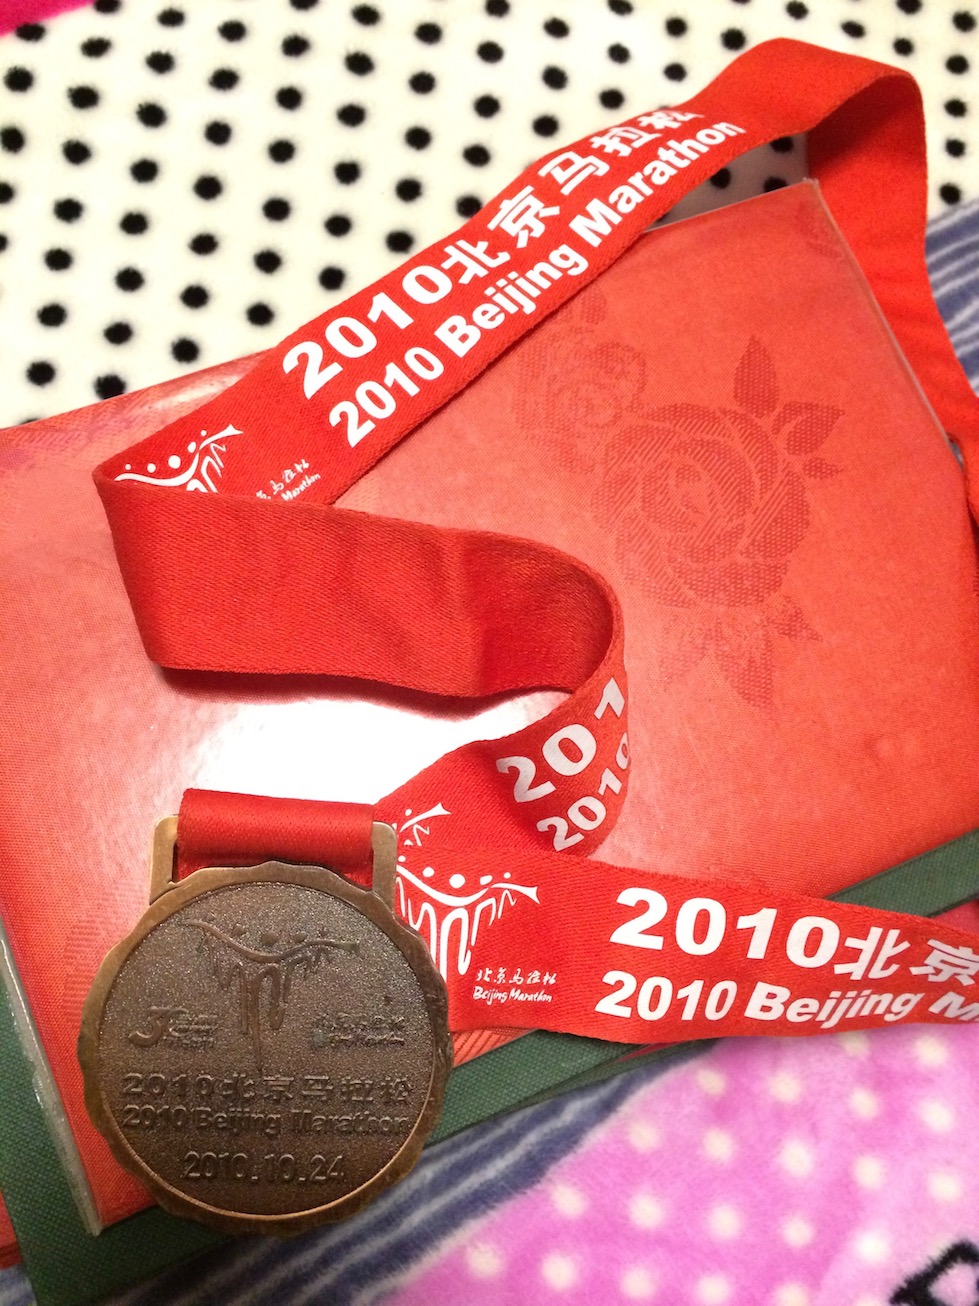 2018-09-16-full-marathon-medal.jpg